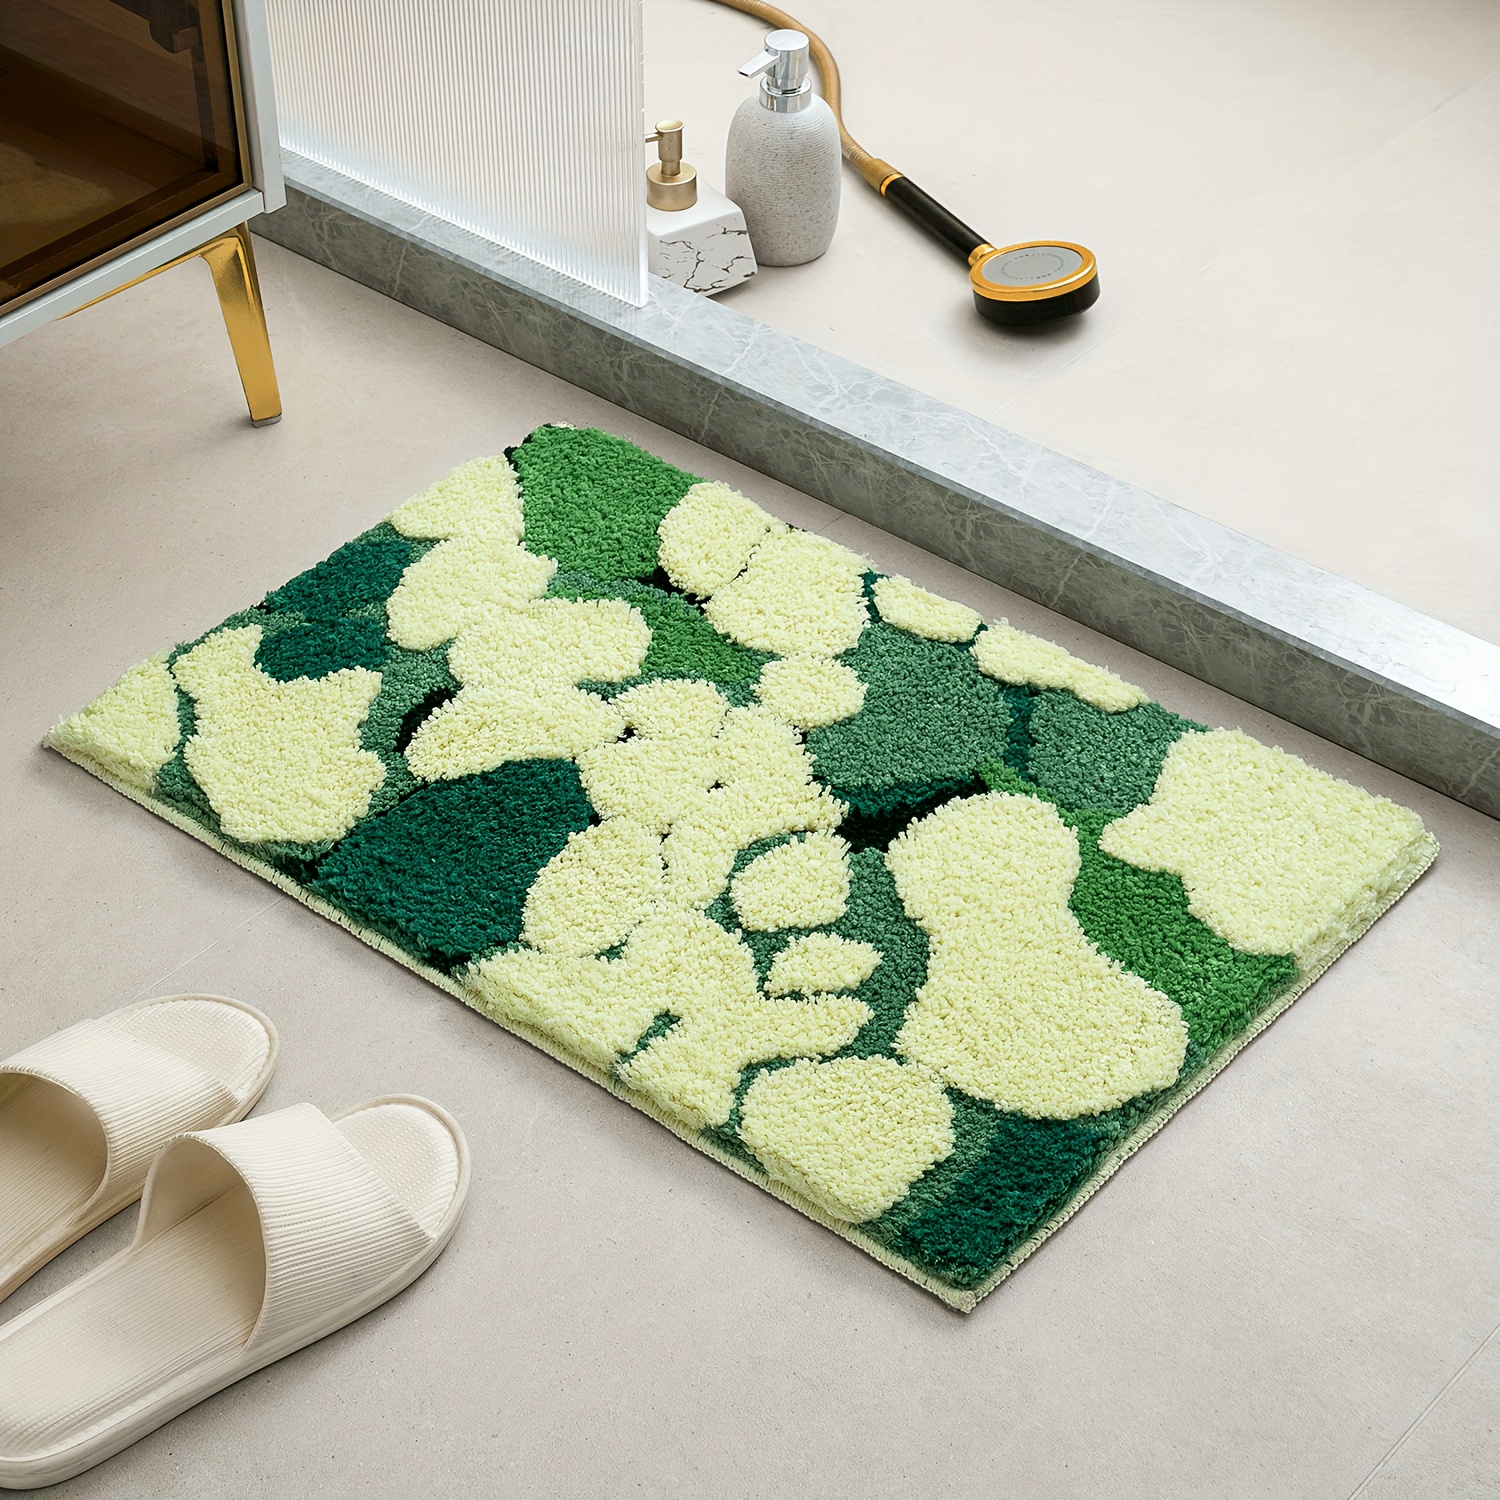 Cute Cartoon Design Floor Mat, Soft Plush Bath Rug, Machine